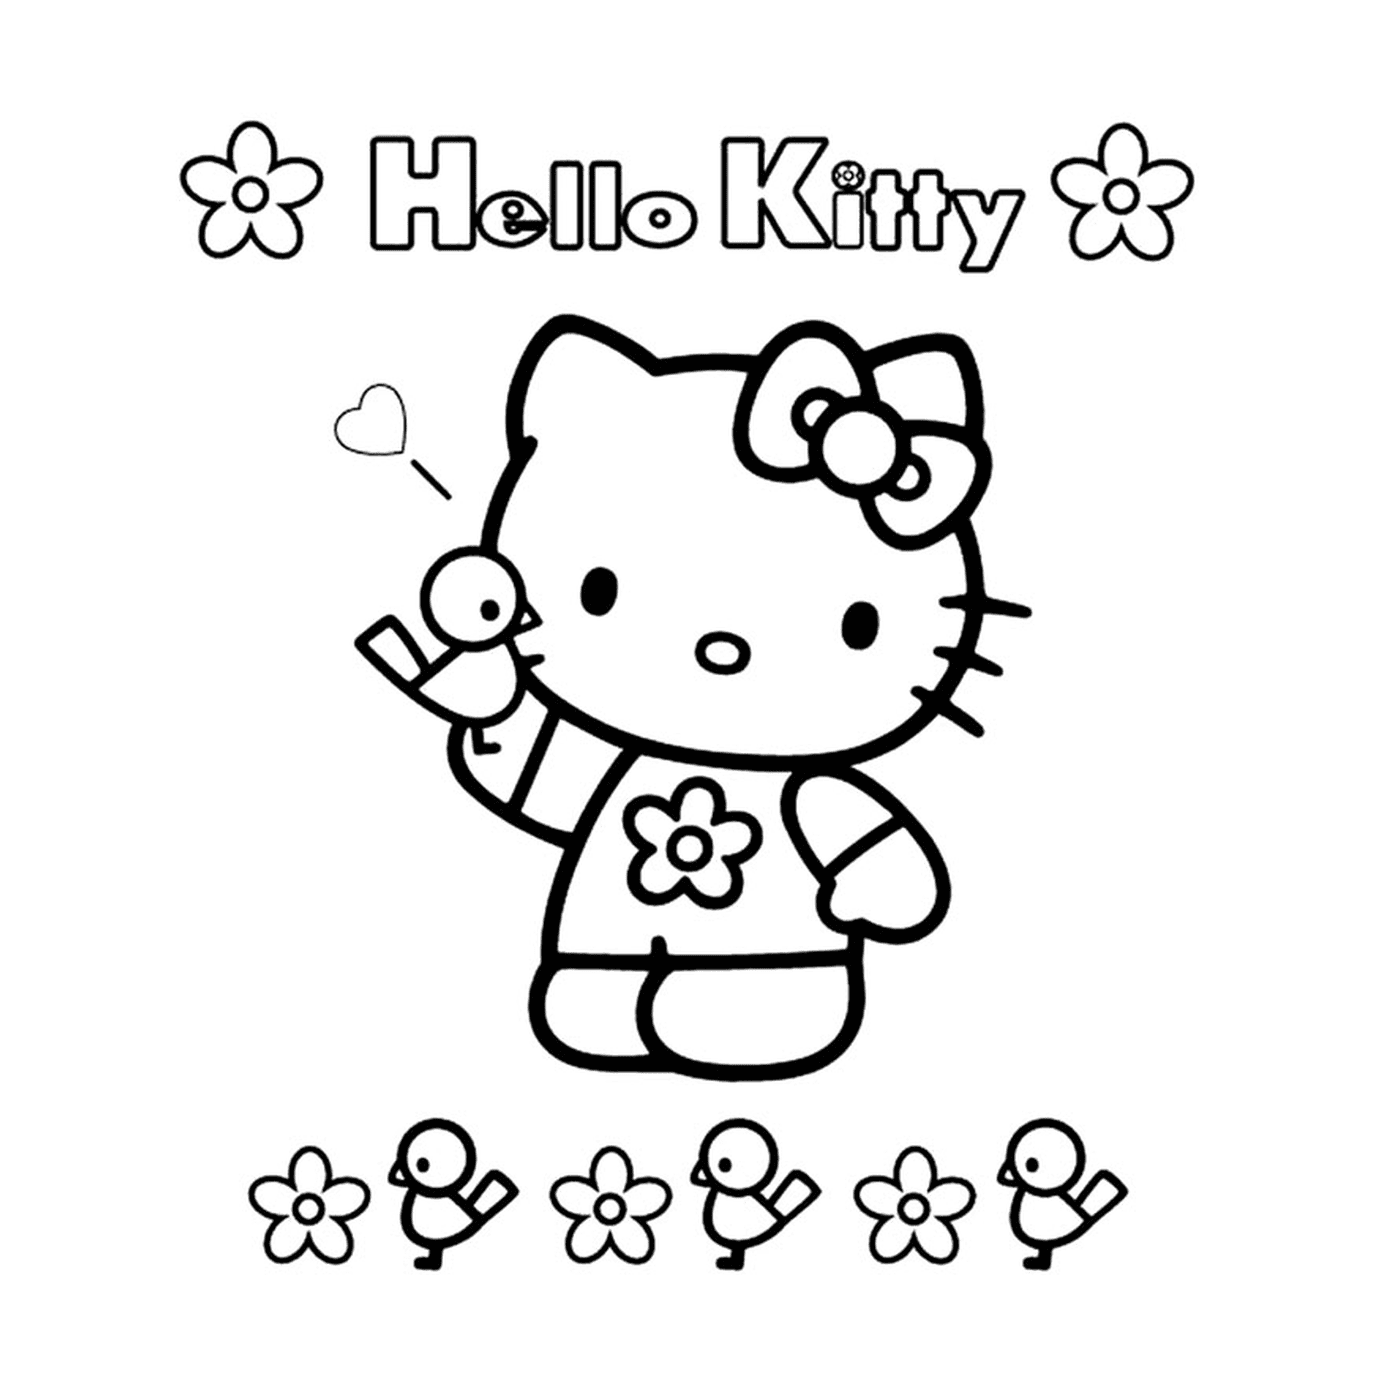   Hello Kitty entourée de fleurs 